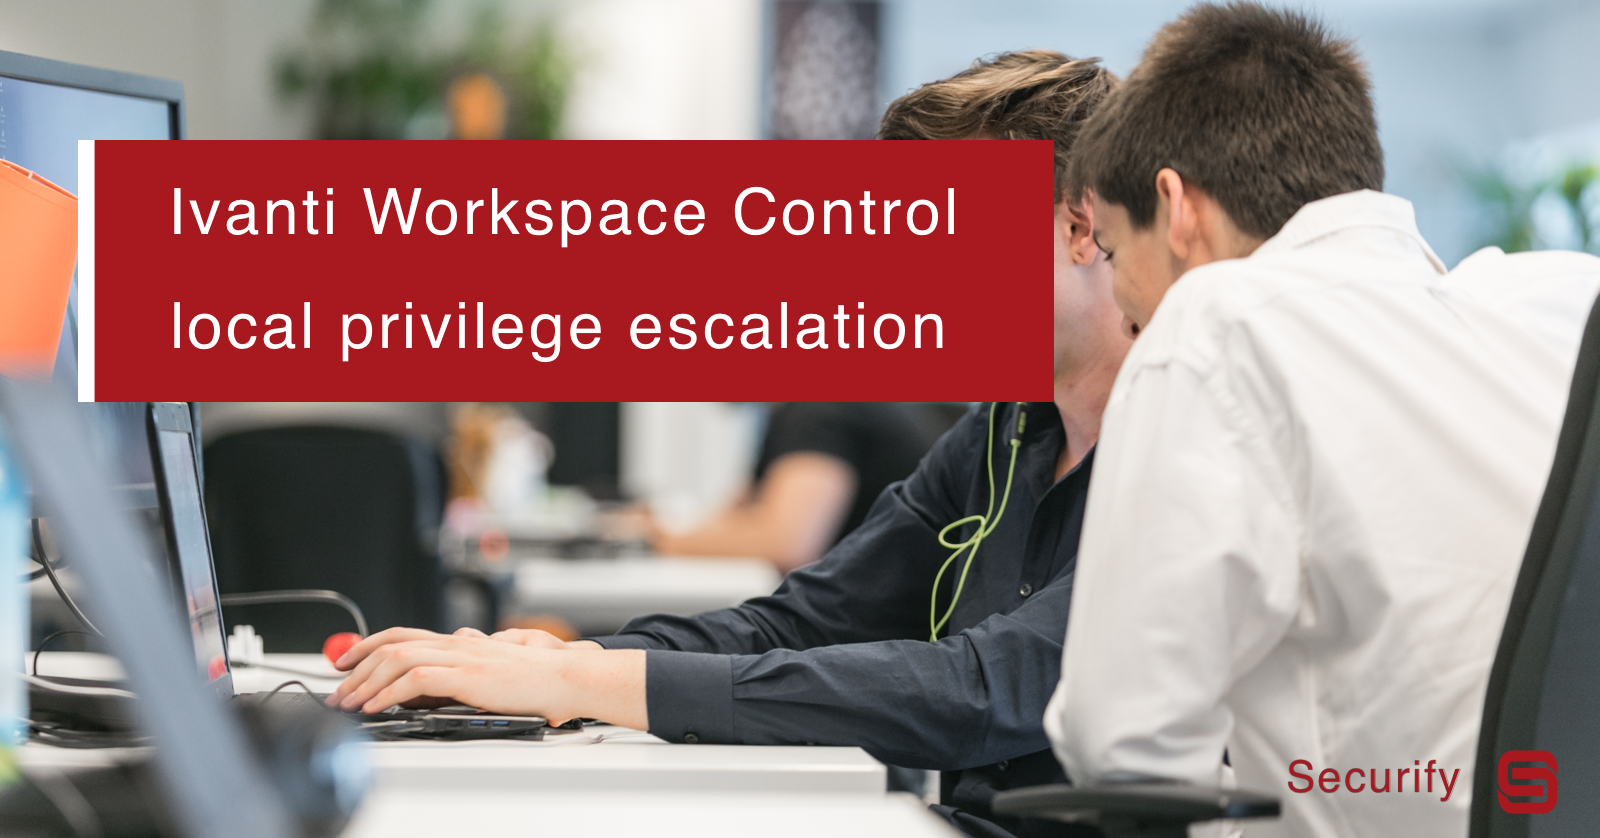 Ivanti Workspace Control local privilege escalation via Named Pipe